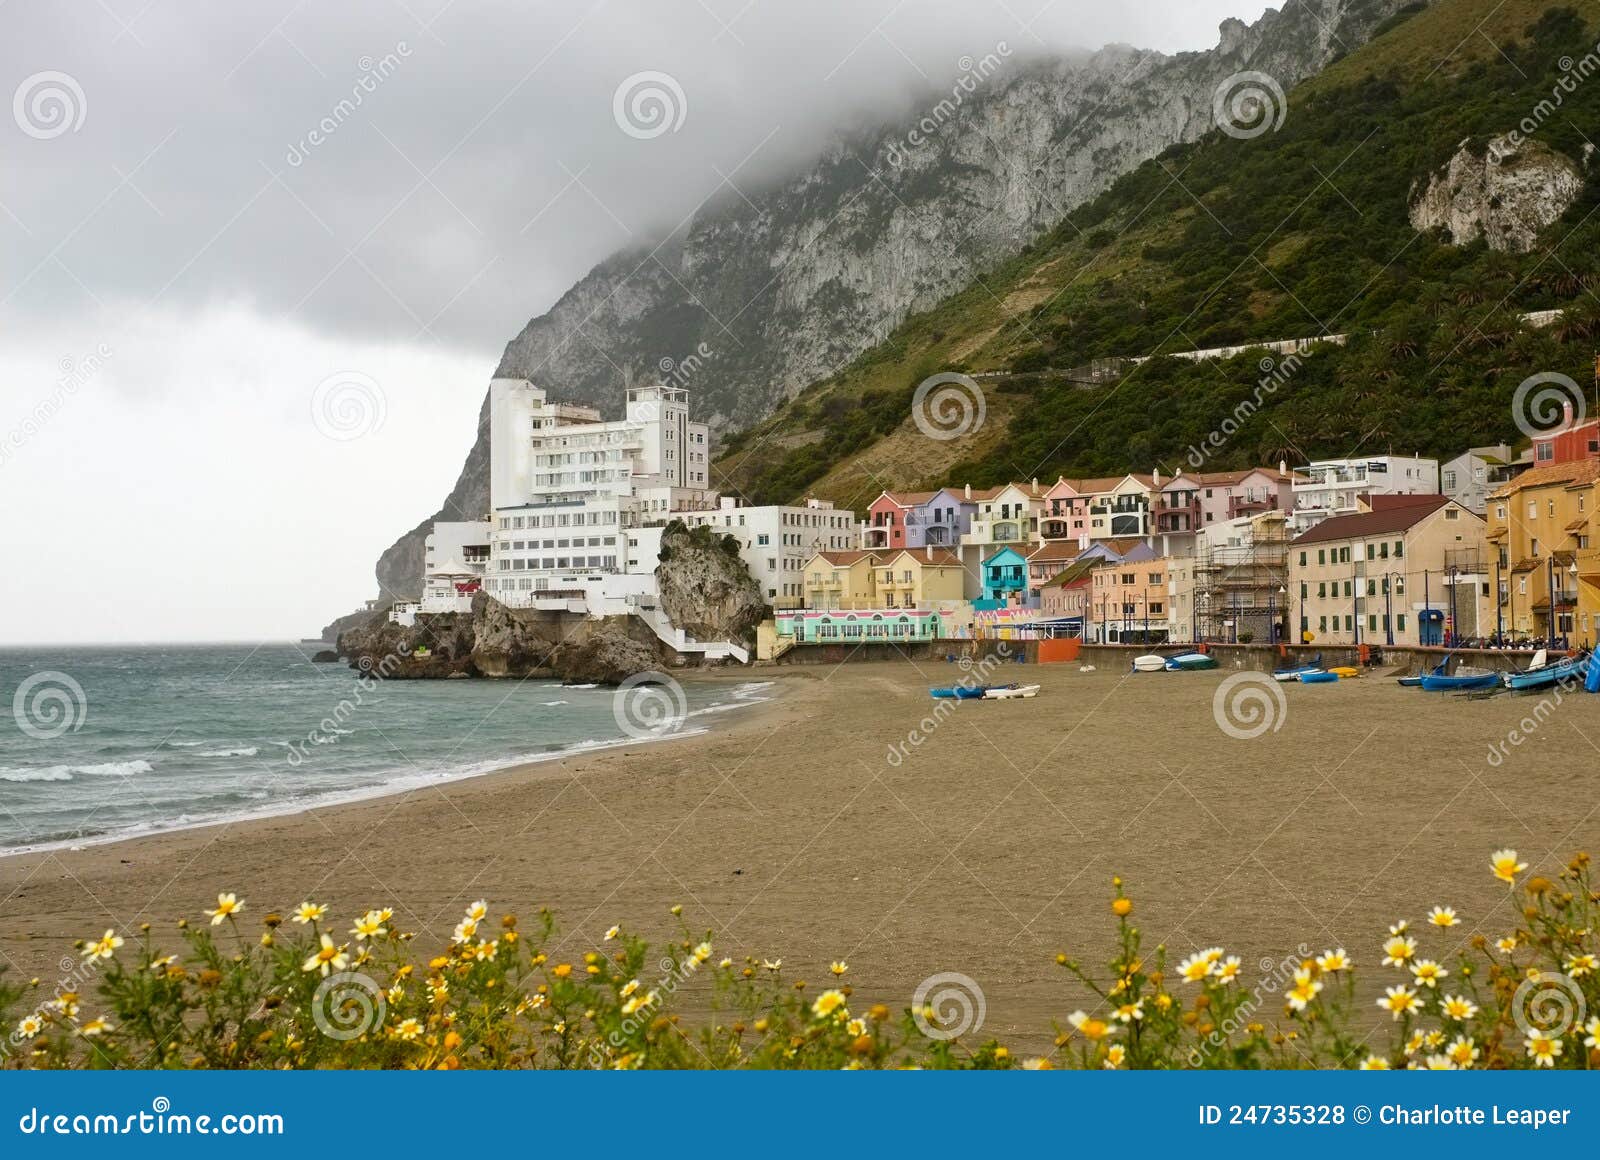 catalan bay and beach, gibraltar